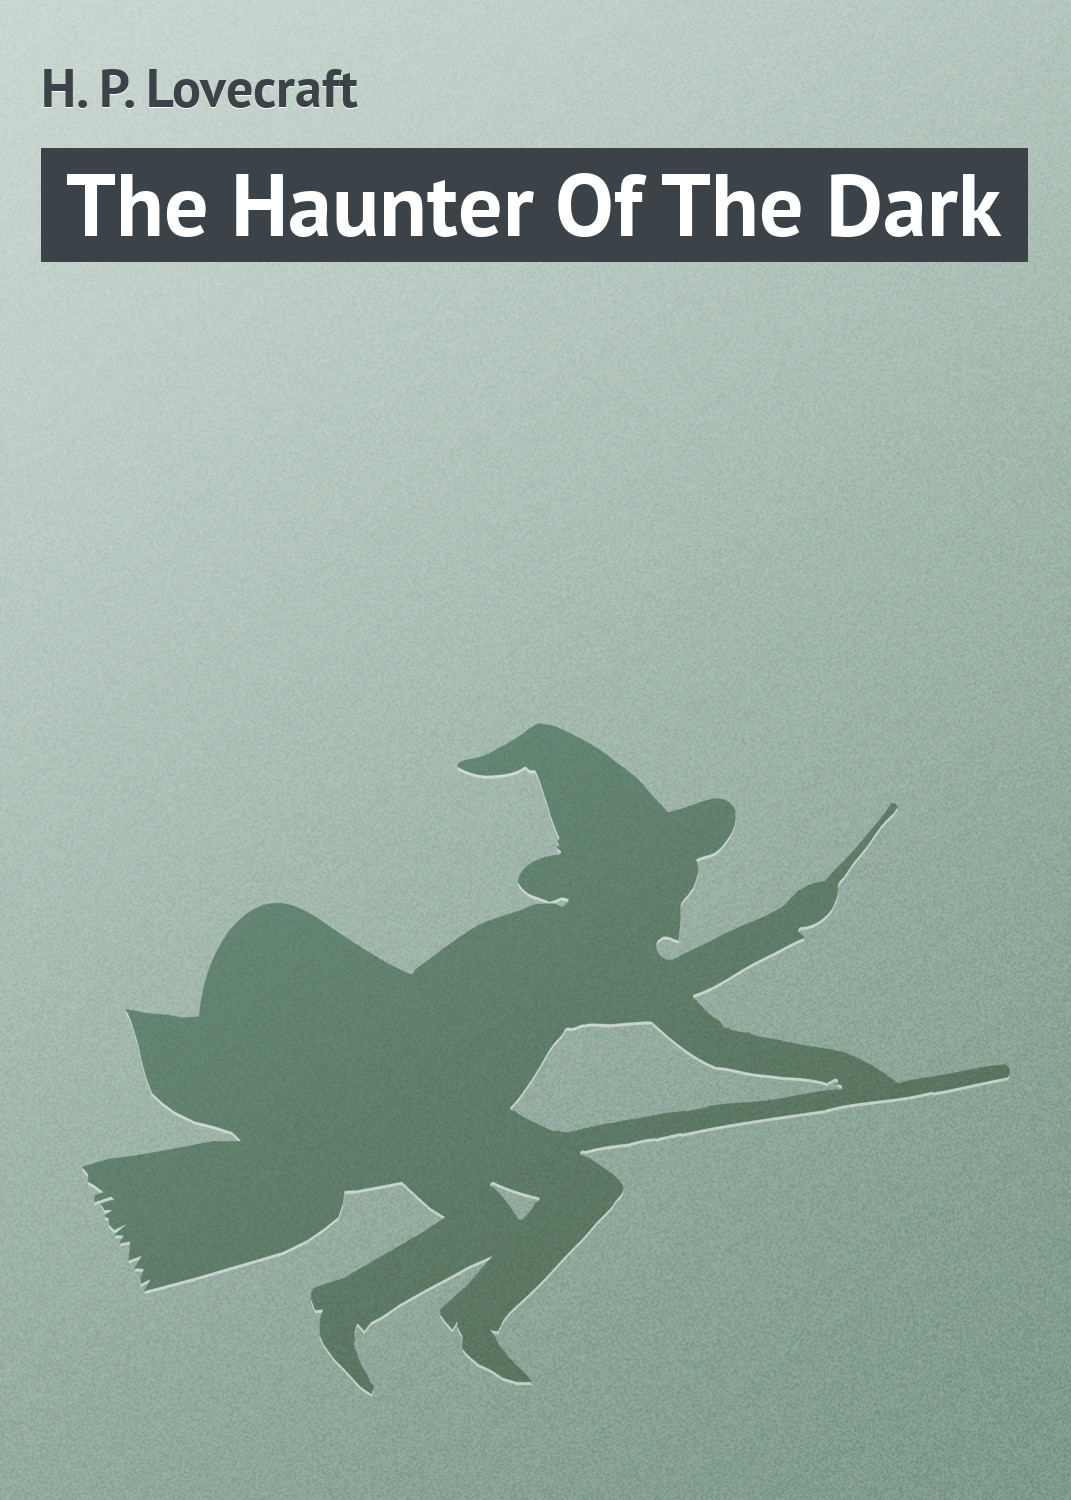 The Haunter Of The Dark